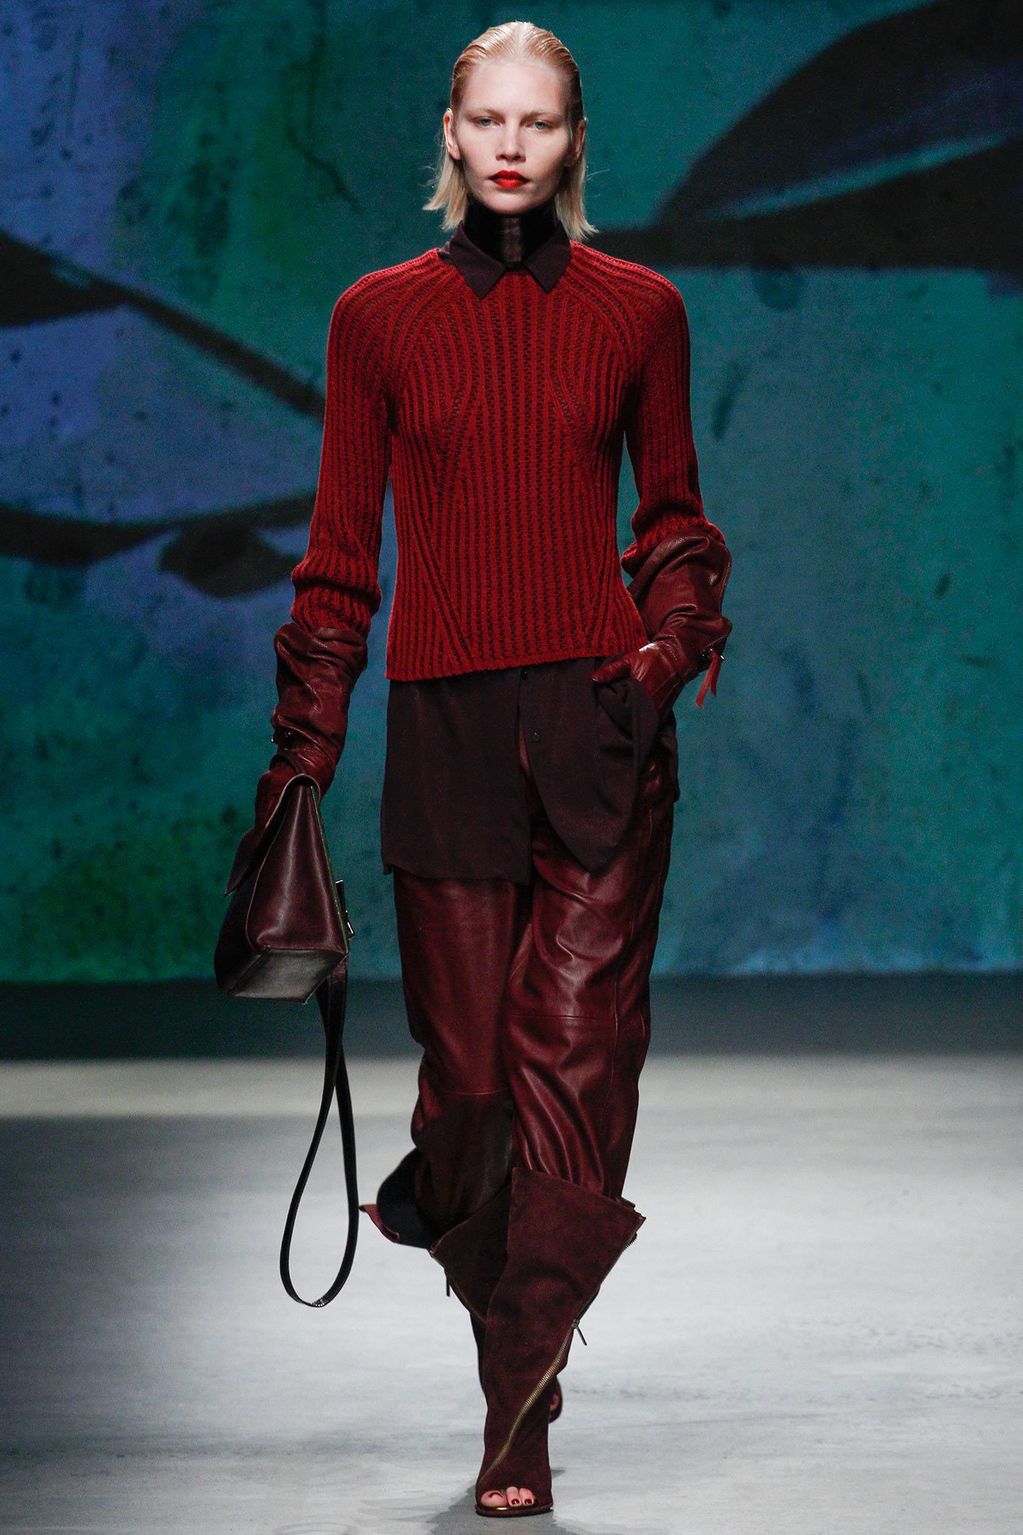 Kenneth Cole Fall/Winter 2013 – New York fashion week | Fab Fashion Fix